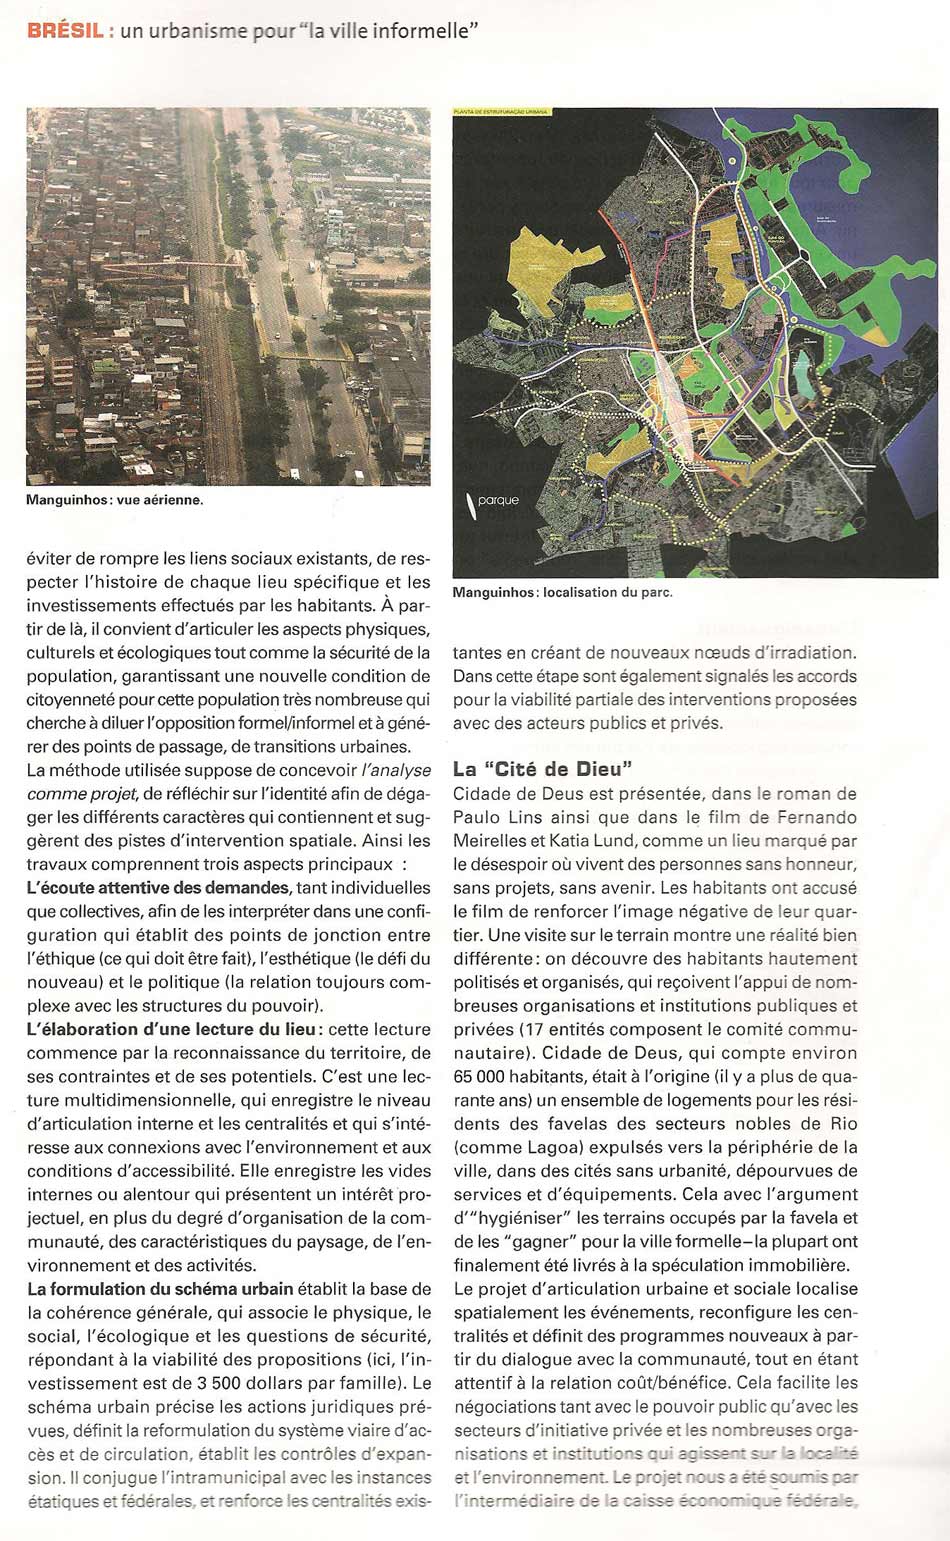 Un Urbanisme pour "La Ville Informelle"